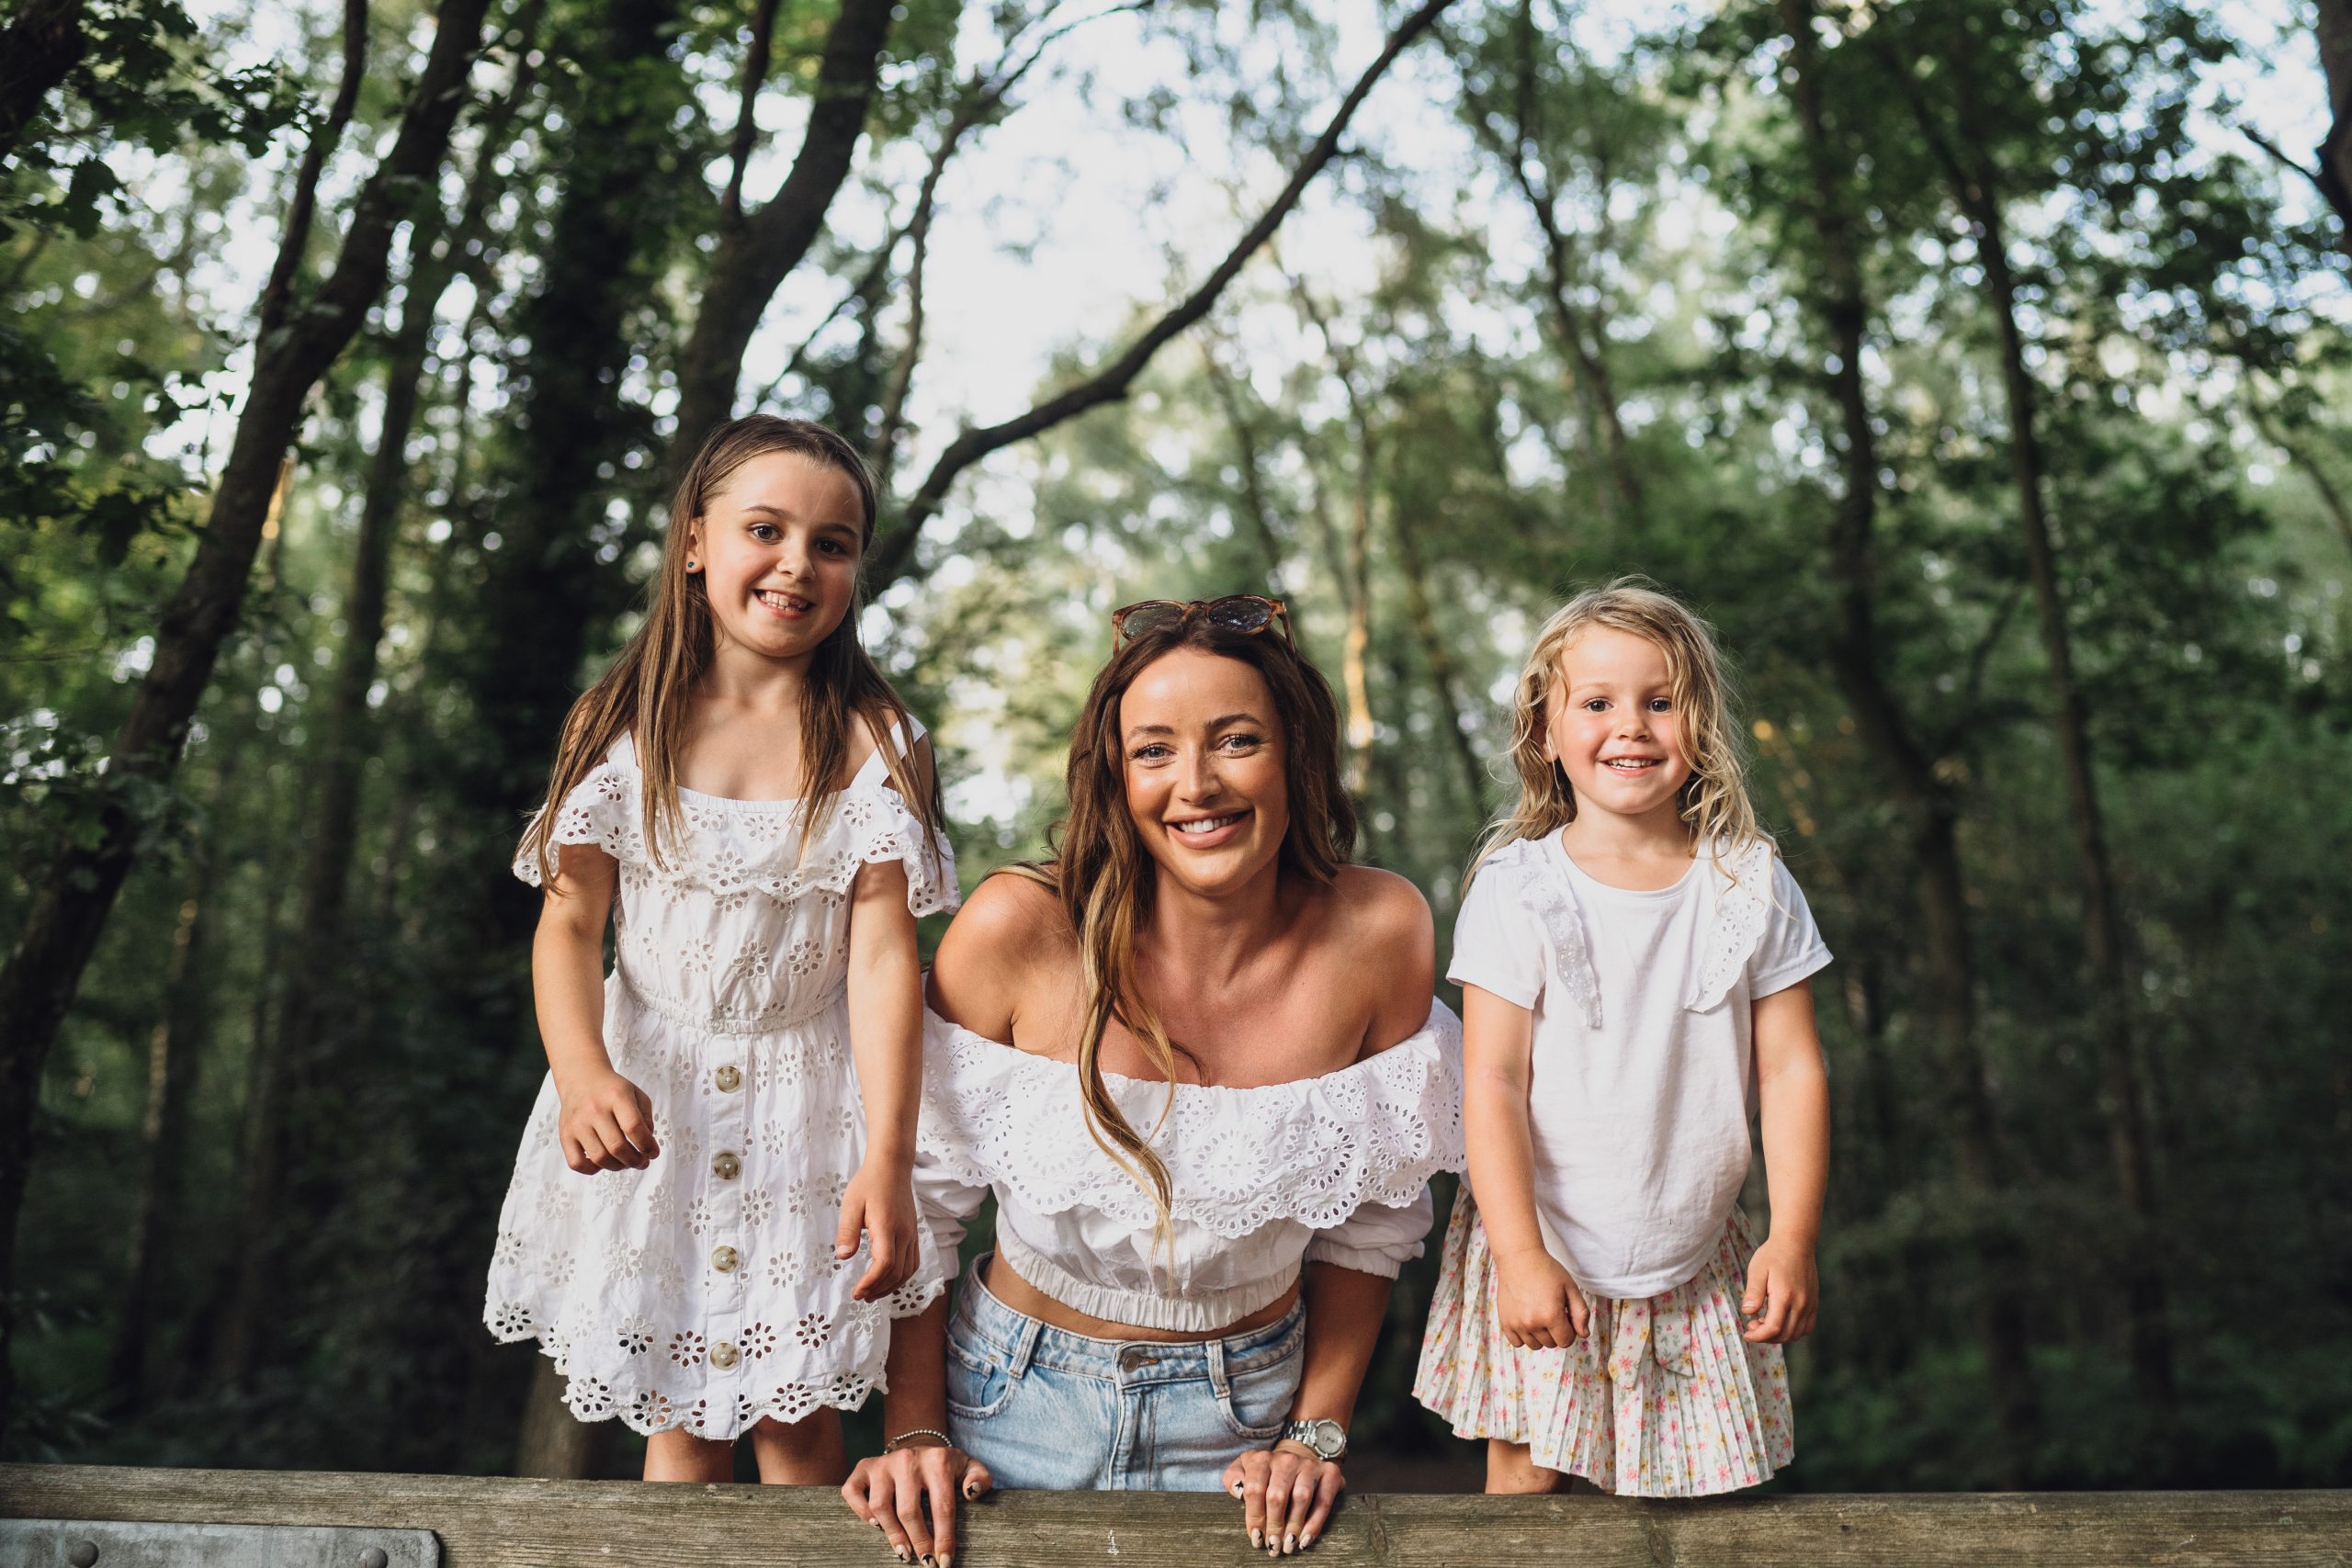 Cheshire family photographer // Jessica & her girls